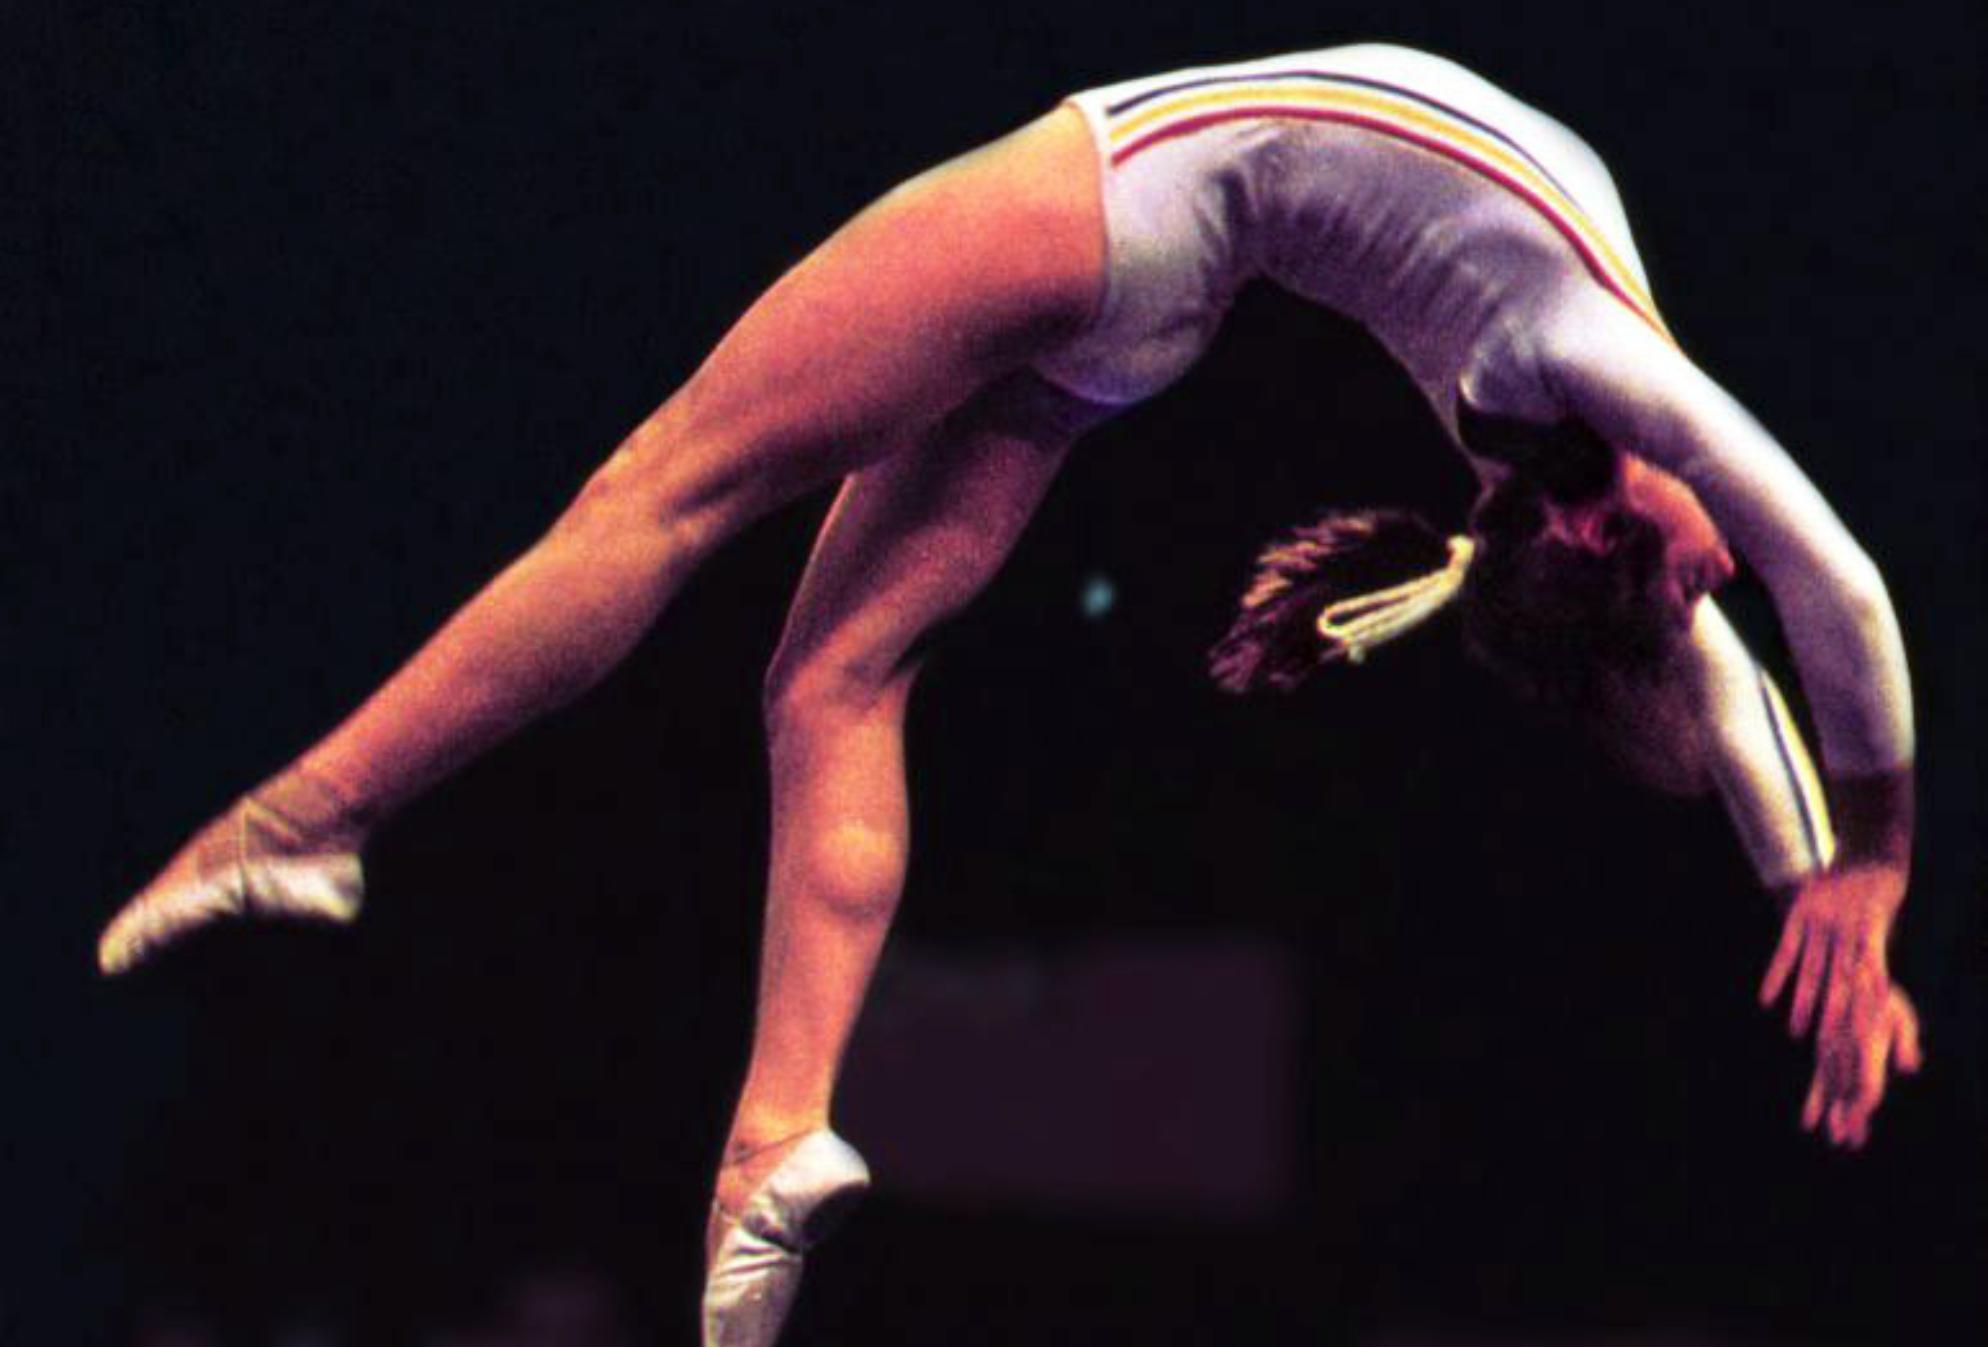 Νάντια Κομανέτσι: Το μοναδικό «τέλειο 10αρι» στην ιστορία της ενόργανης γυμναστικής – Η κακοποίηση και η απόπειρα αυτοκτονίας